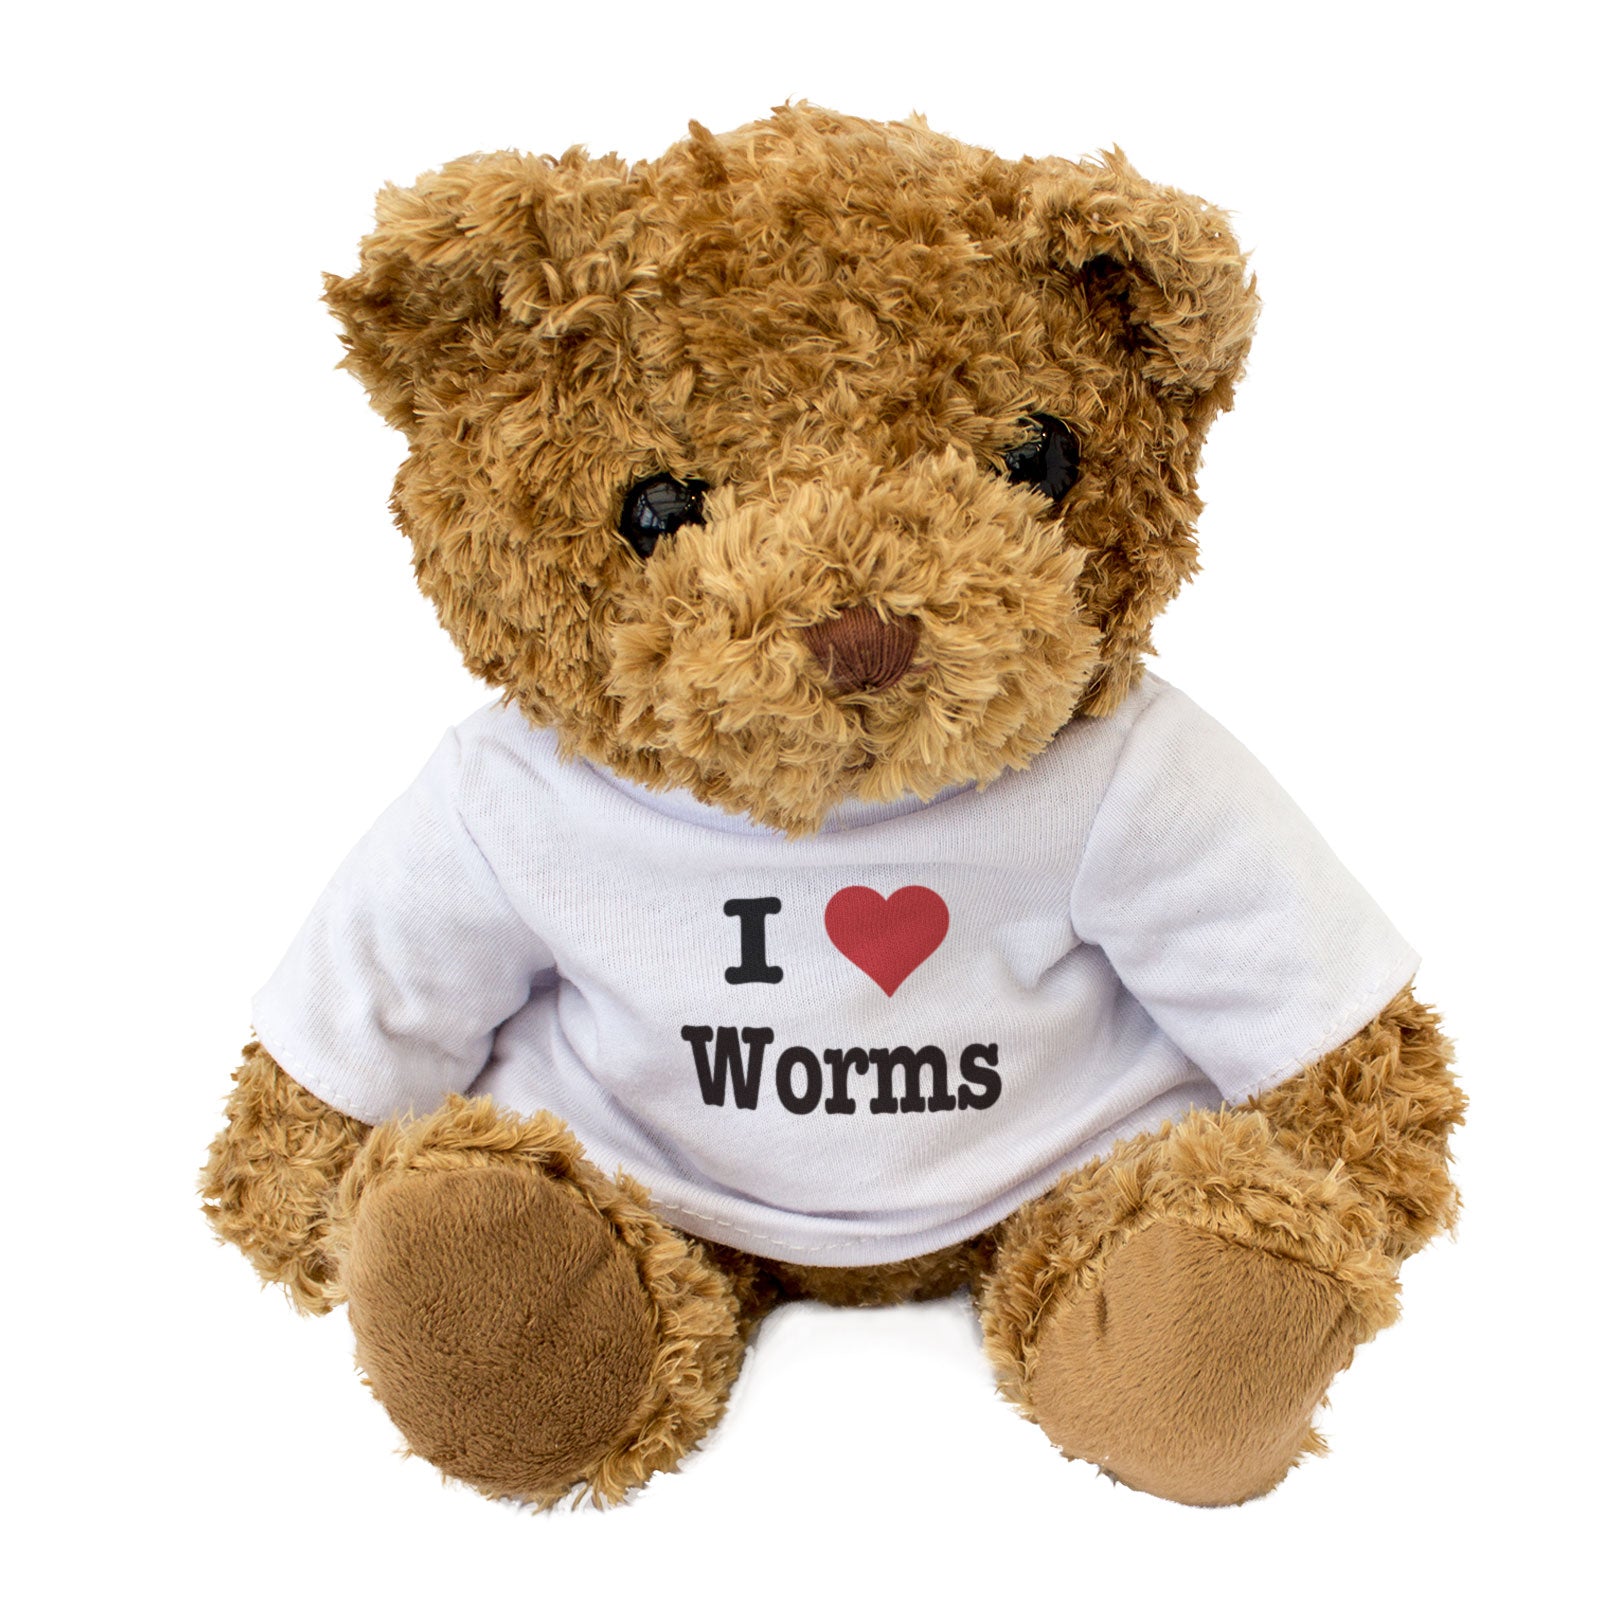 I Love Worms - Teddy Bear